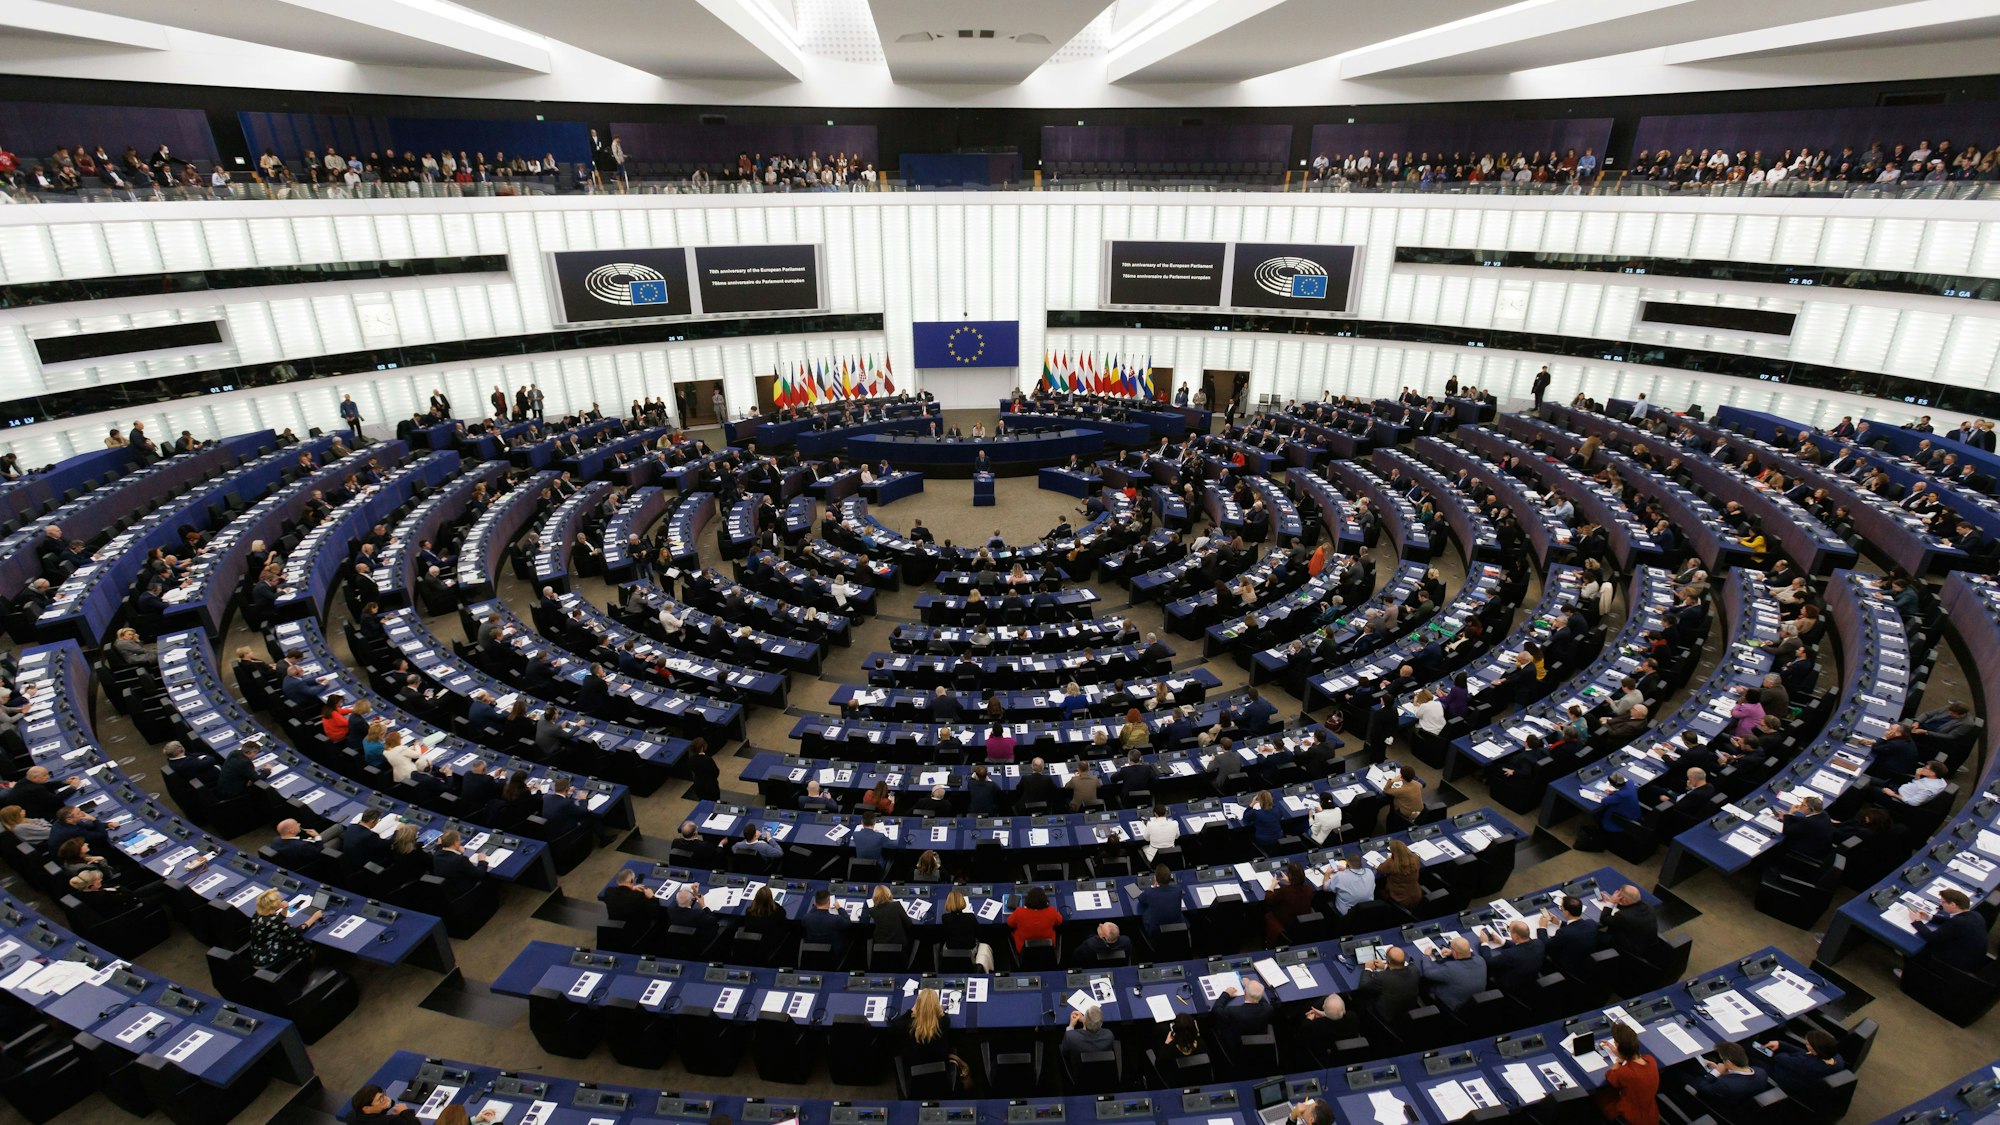 Abgeordnete und Gäste sitzen im Gebäude des Europäischen Parlaments.